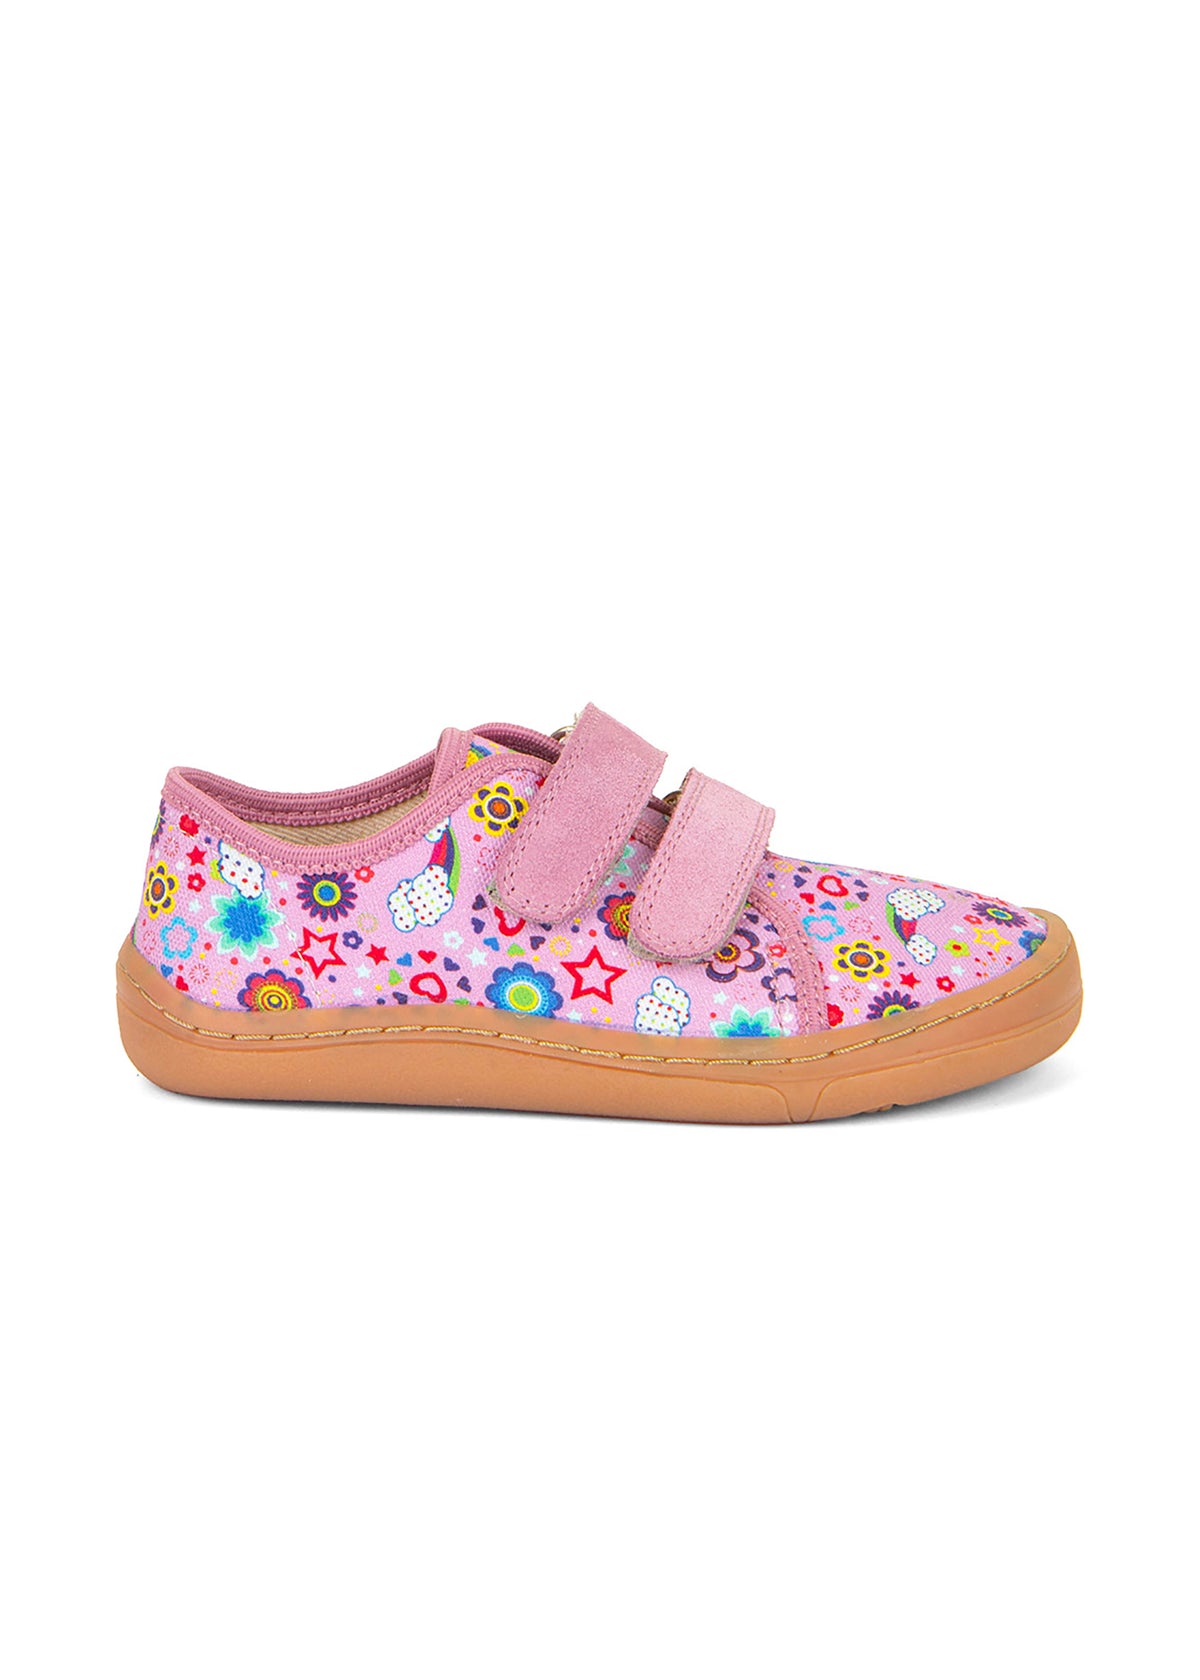 Barfotasneakers för barn - rosa, flerfärgade mönster